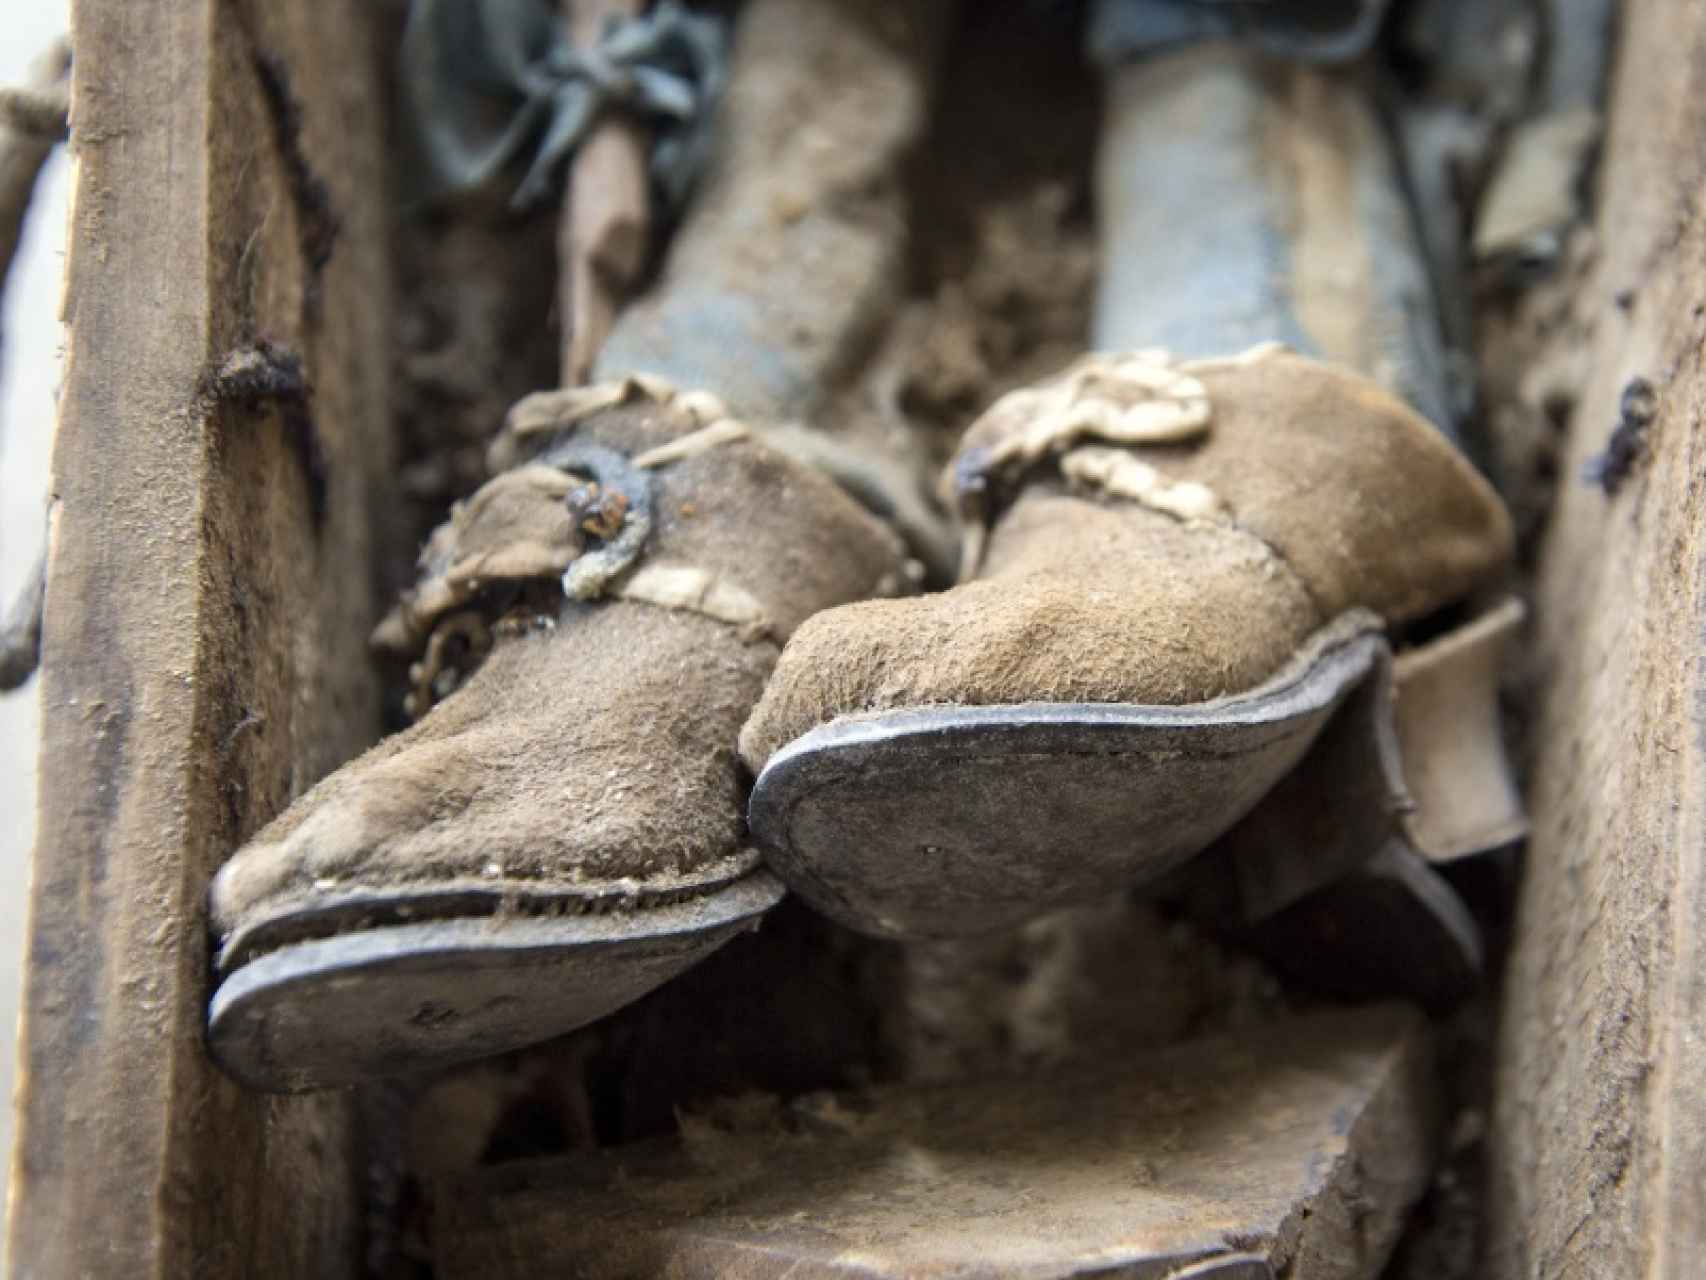 Detalle de los zapatos de una de las momias hallada en un ataúd, primorosamente vestida.